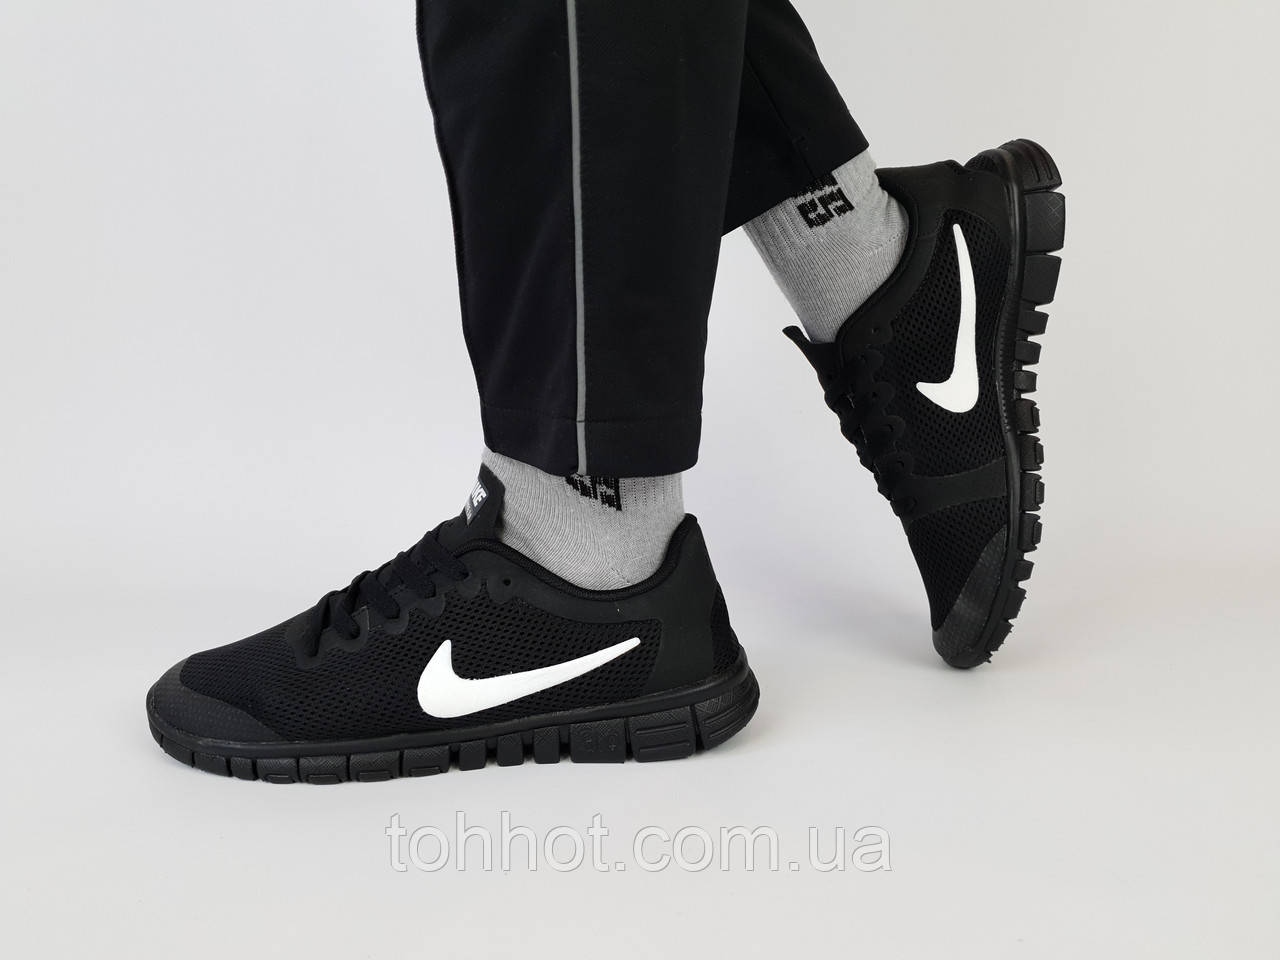 Кросівки чоловічі чорні чорні з білим Nike Free Run 3.0 Black White. Взуття чоловіче літнє Найк Фрі Ран 3.0